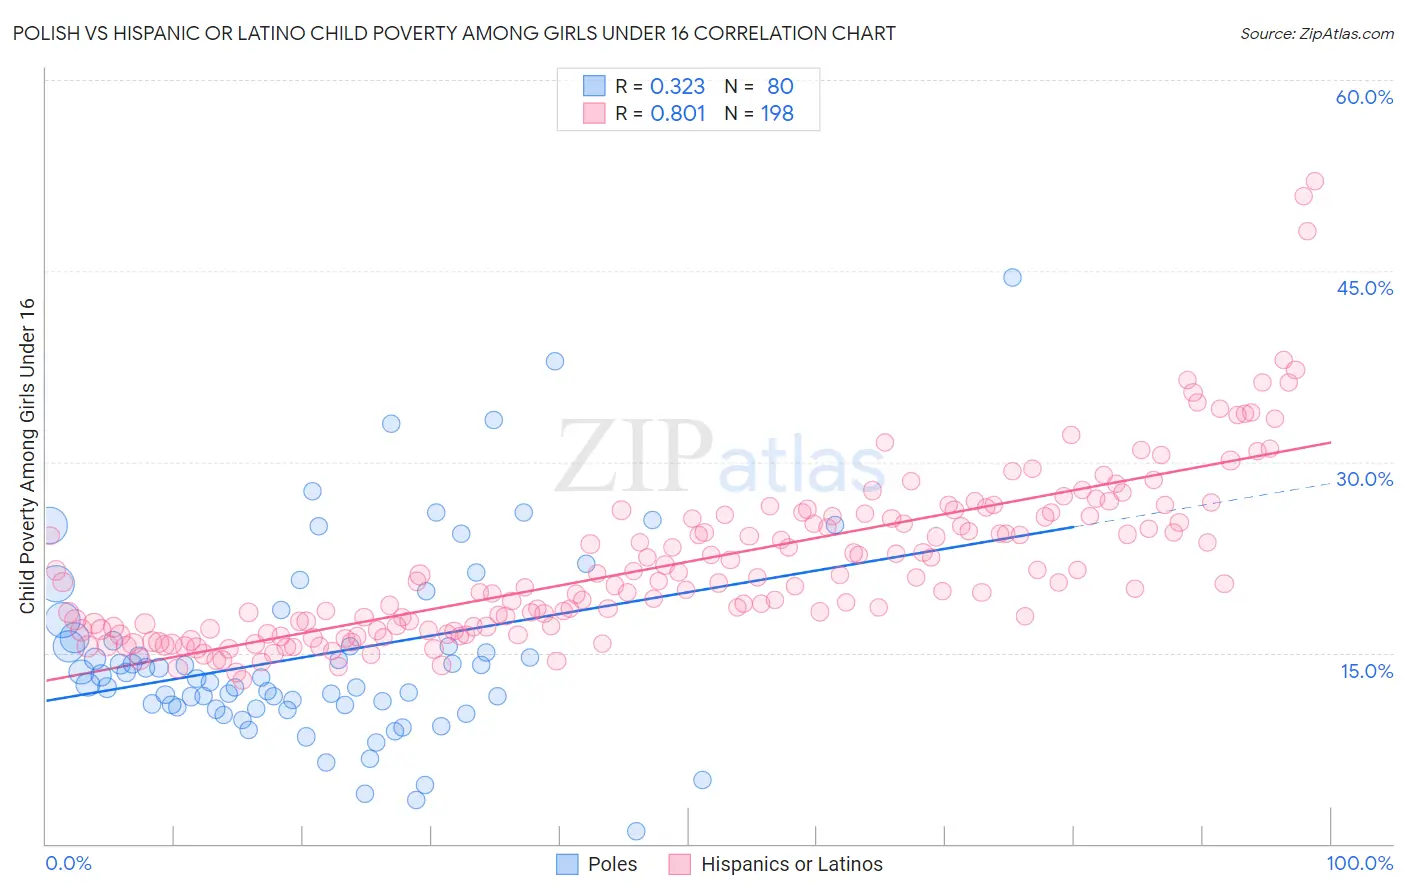 Polish vs Hispanic or Latino Child Poverty Among Girls Under 16